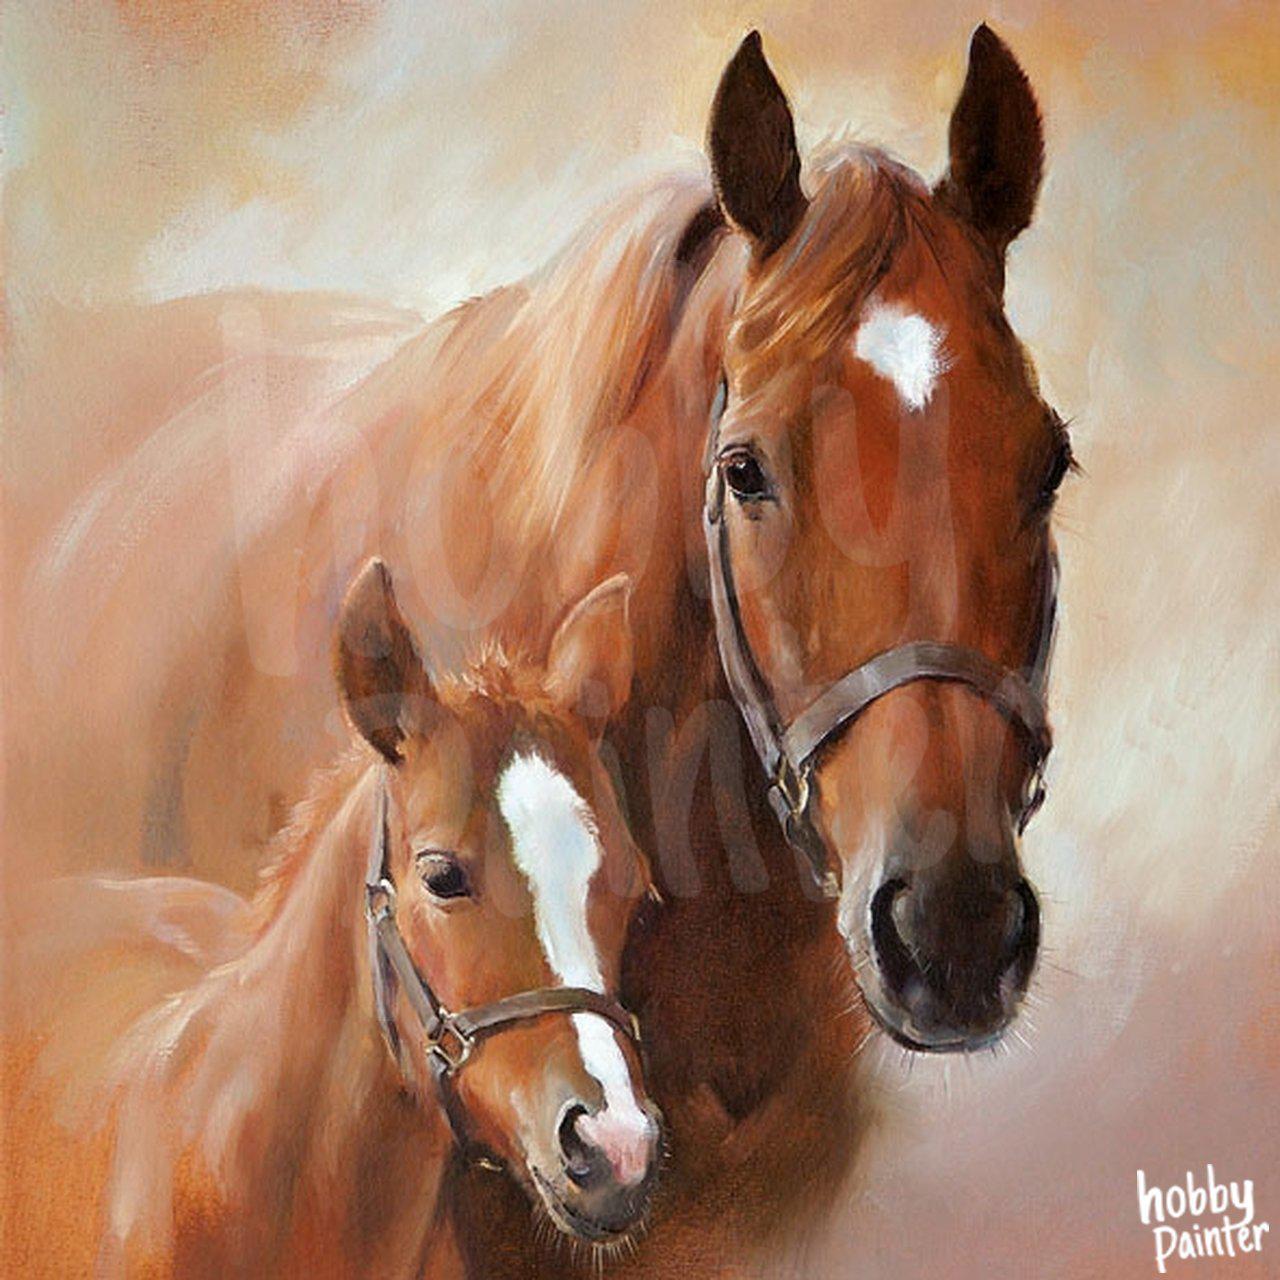 Diamond Painting Paard met veulen voorbeeld Hobby Painter